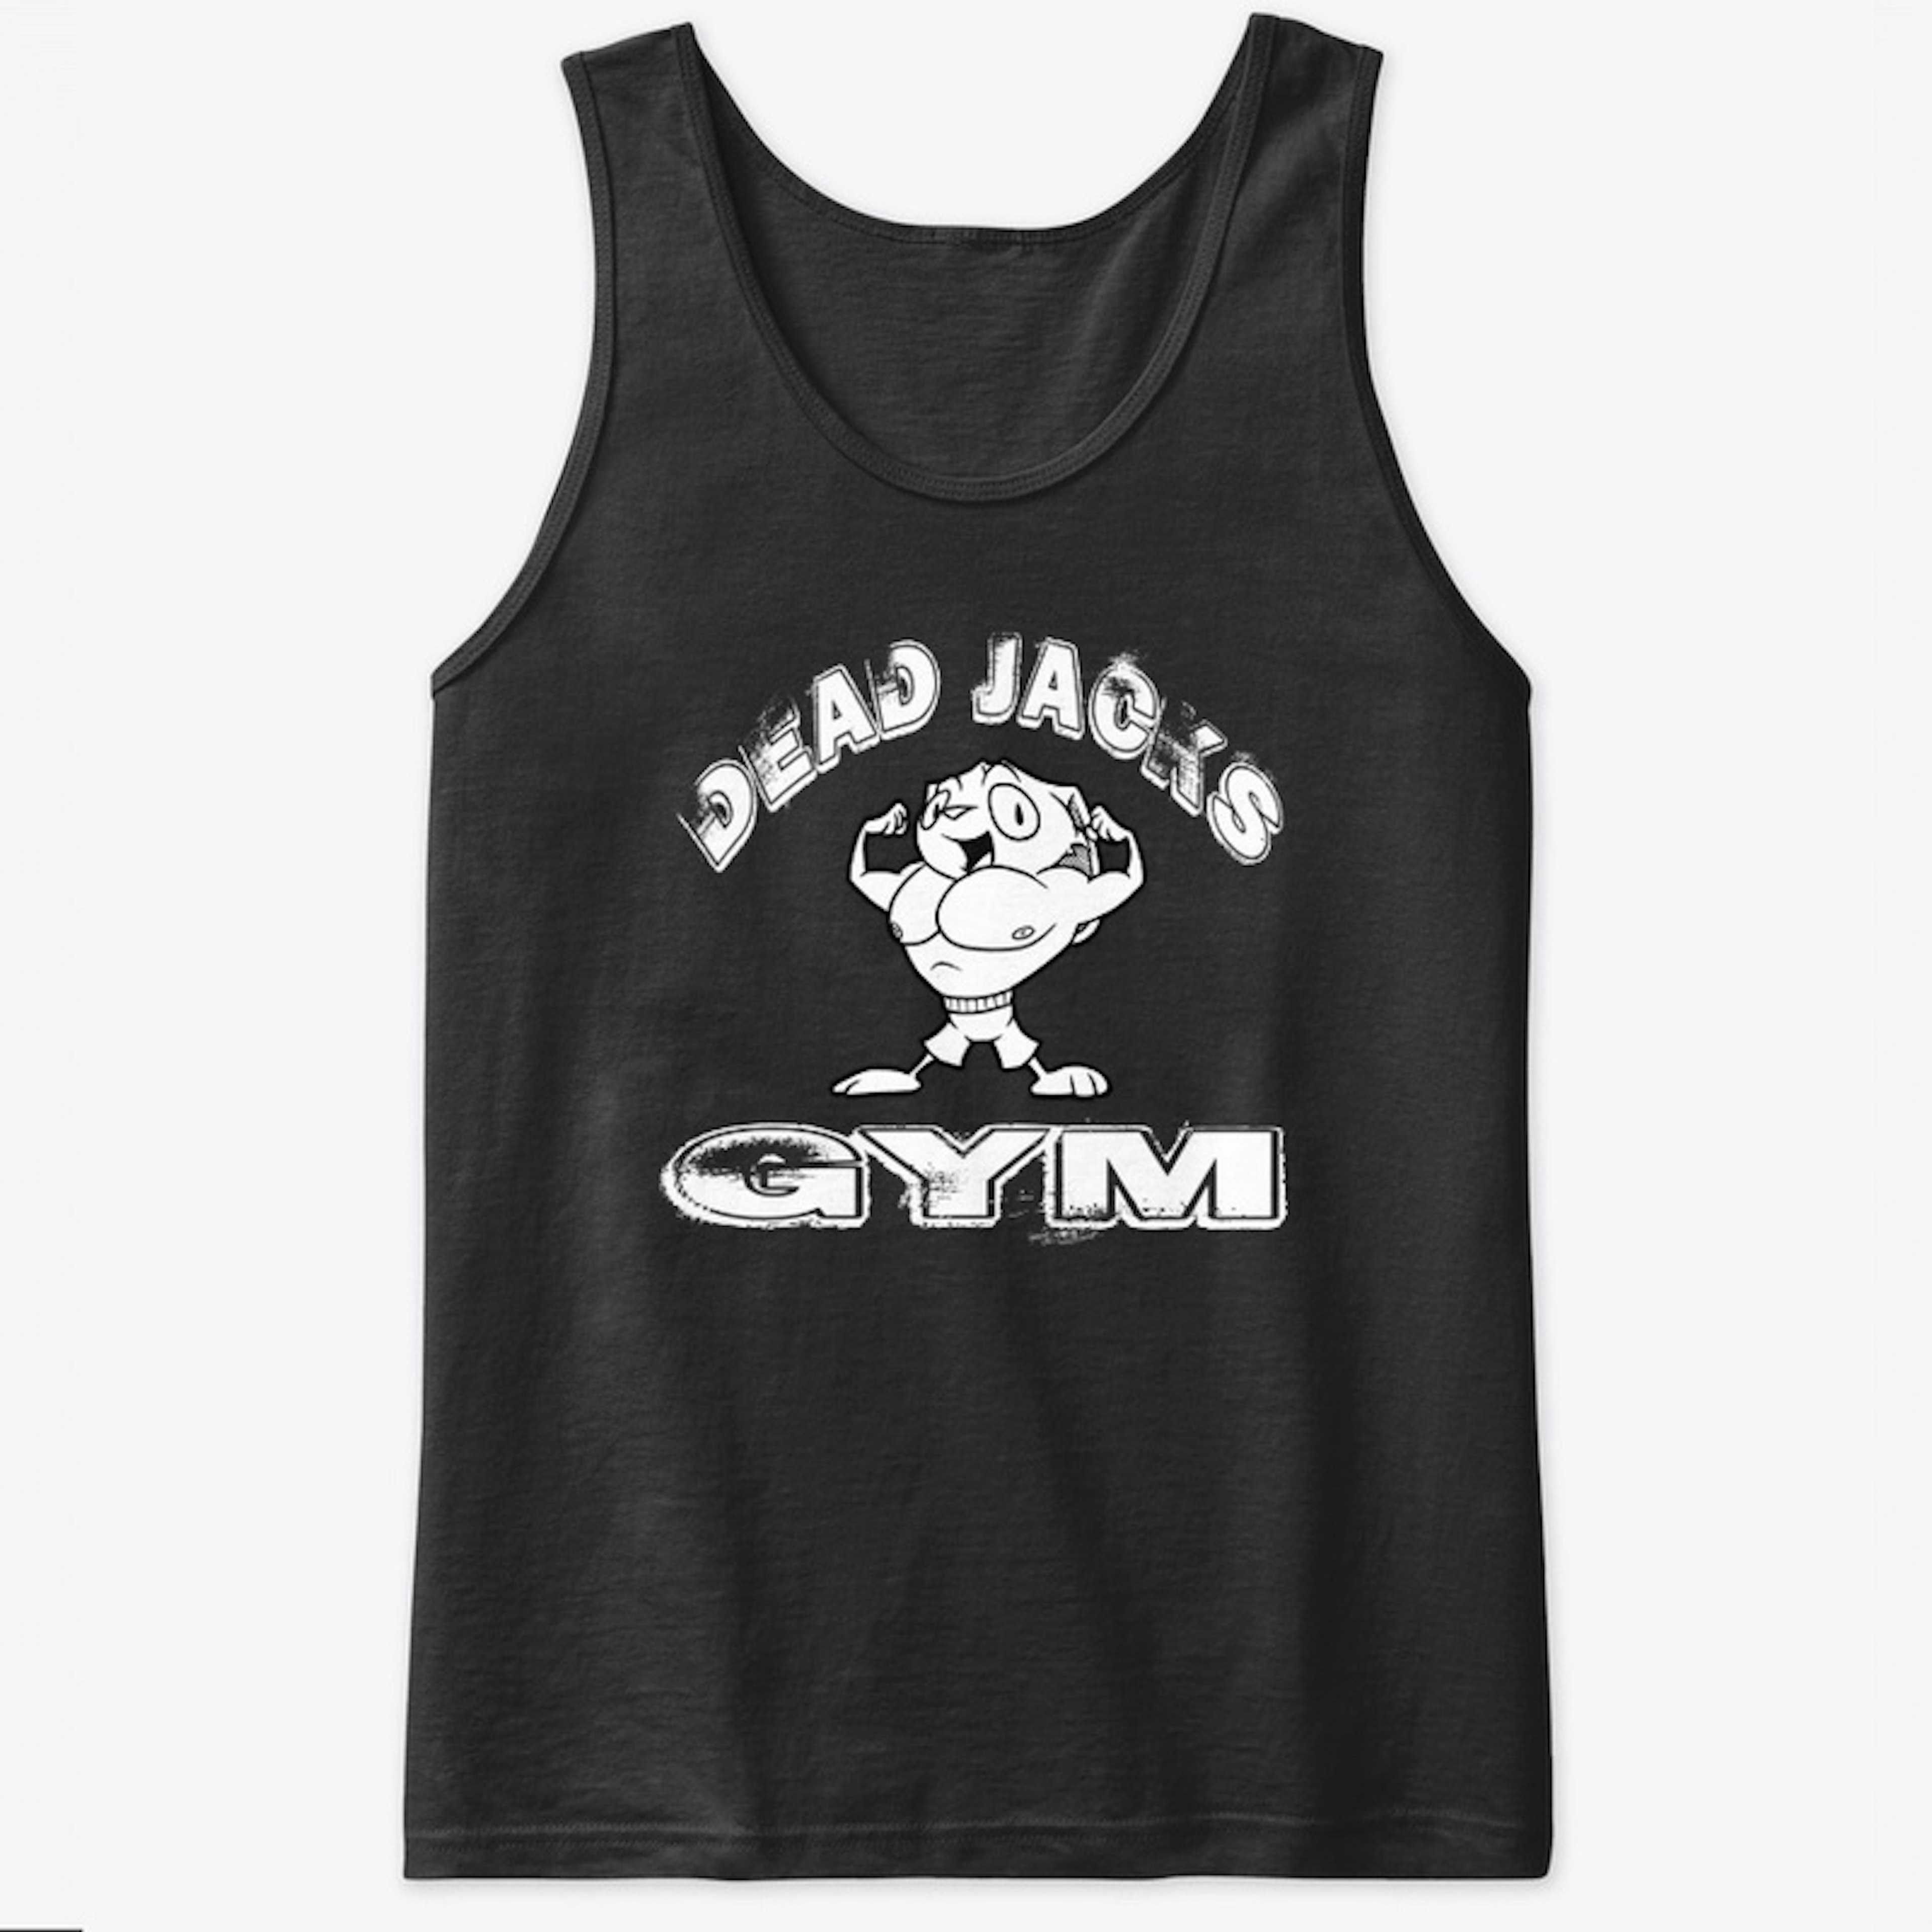 Dead JACK's Gym (dark)